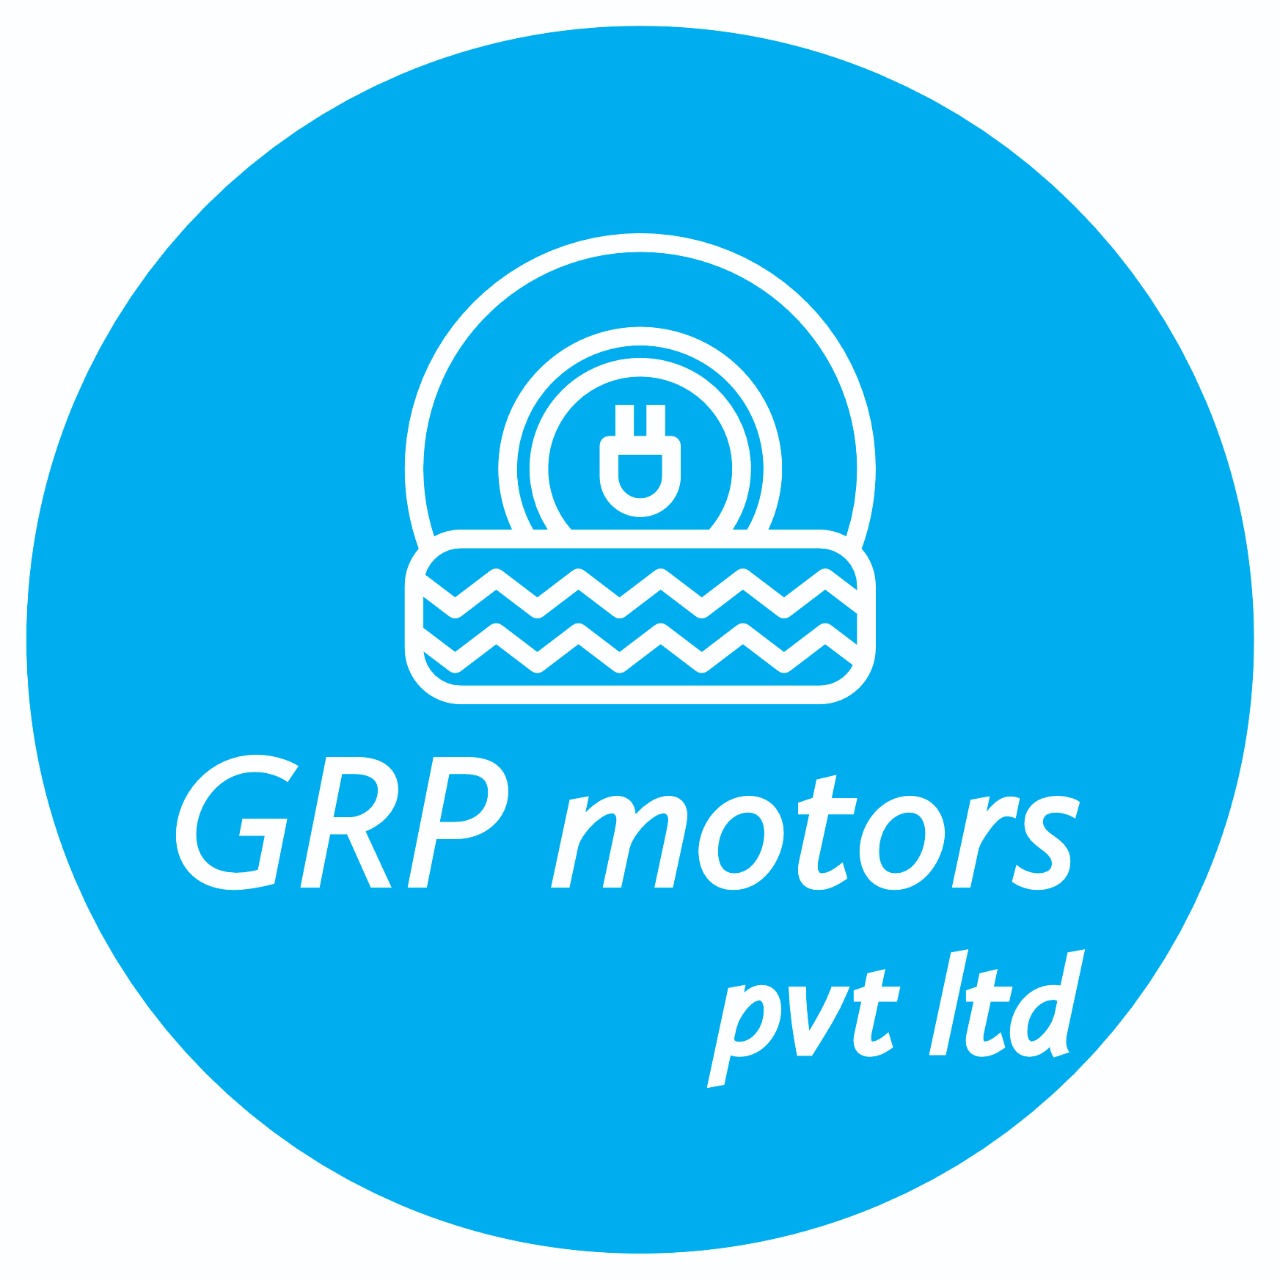 GRP Motors Pvt Ltd